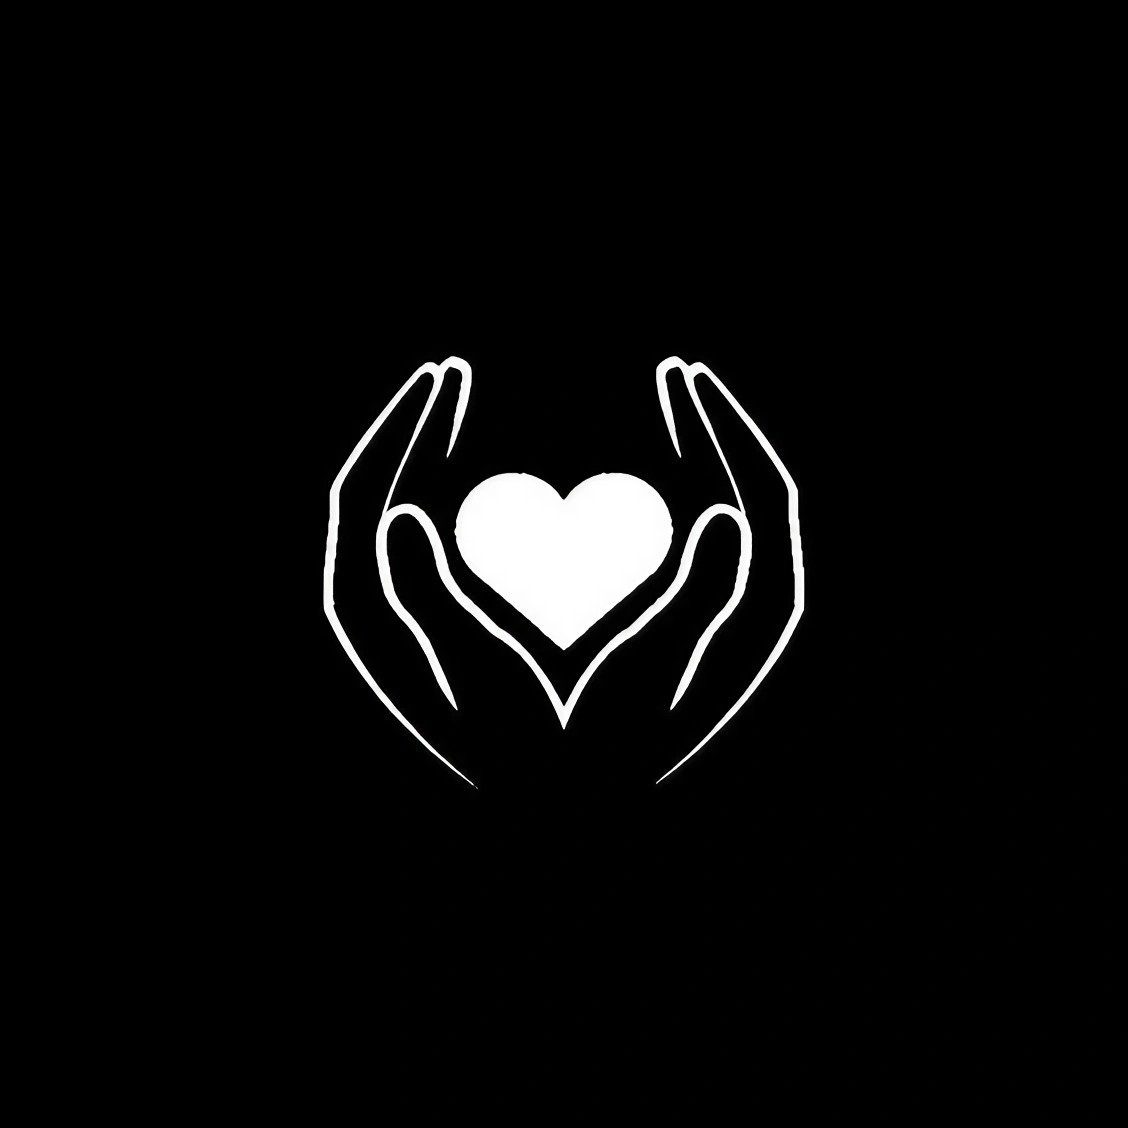 Black Line Emoji Art - Hands Holding Heart